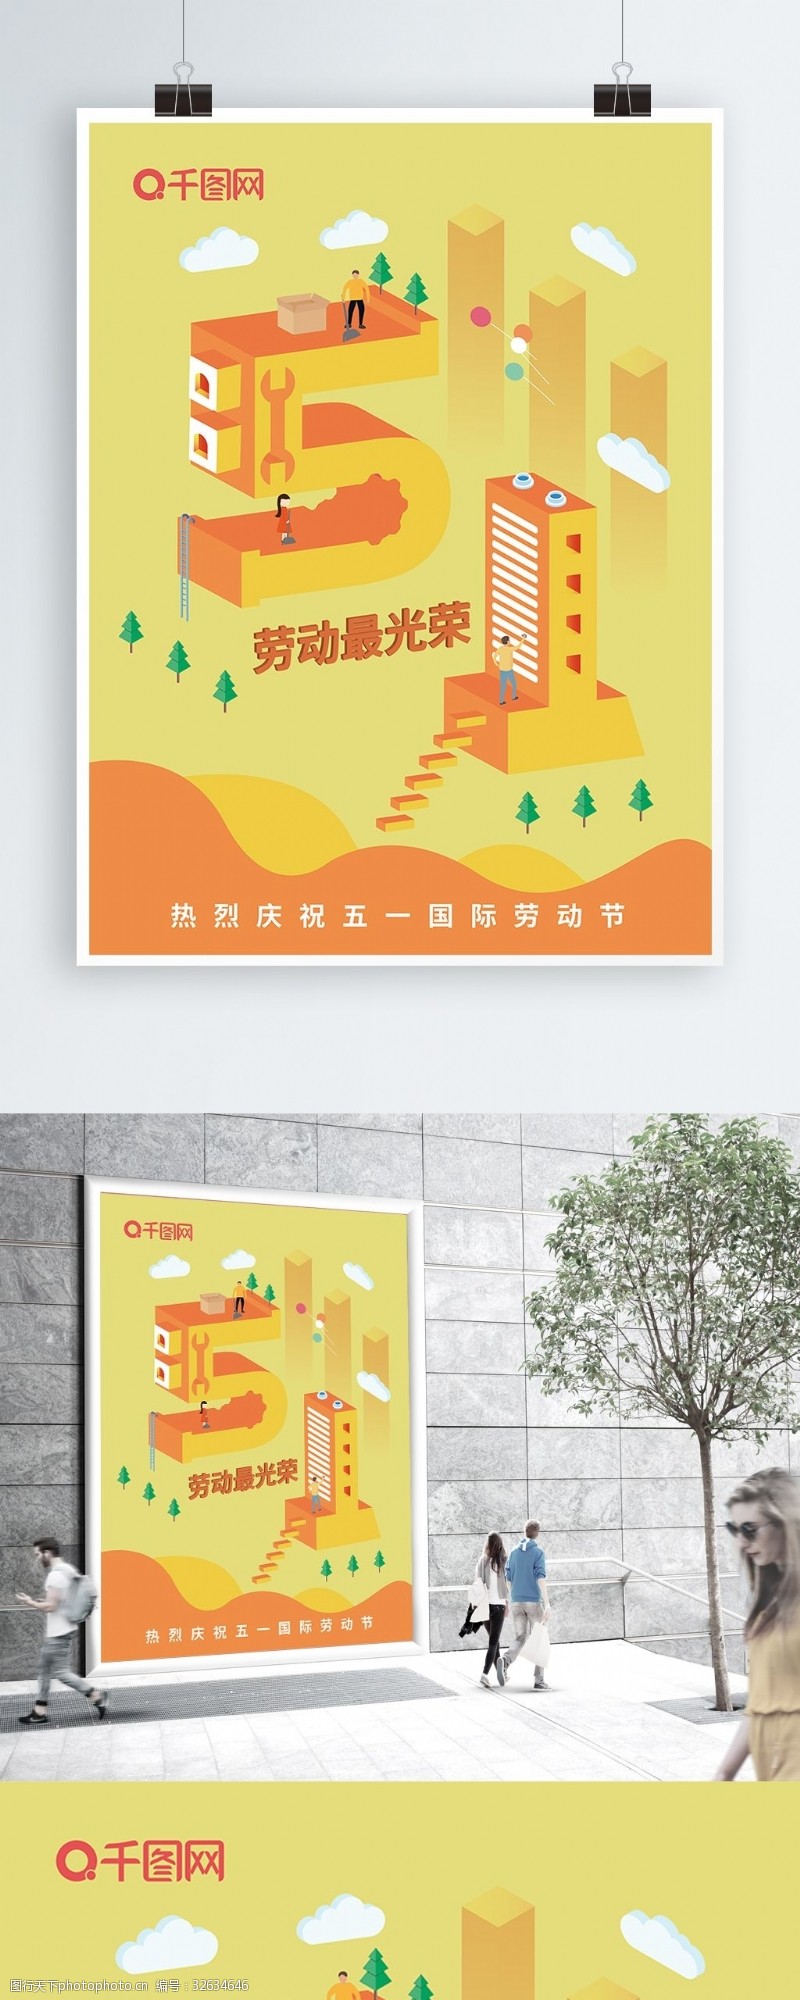 橙色2.5D插画庆祝五一国际劳动节日海报